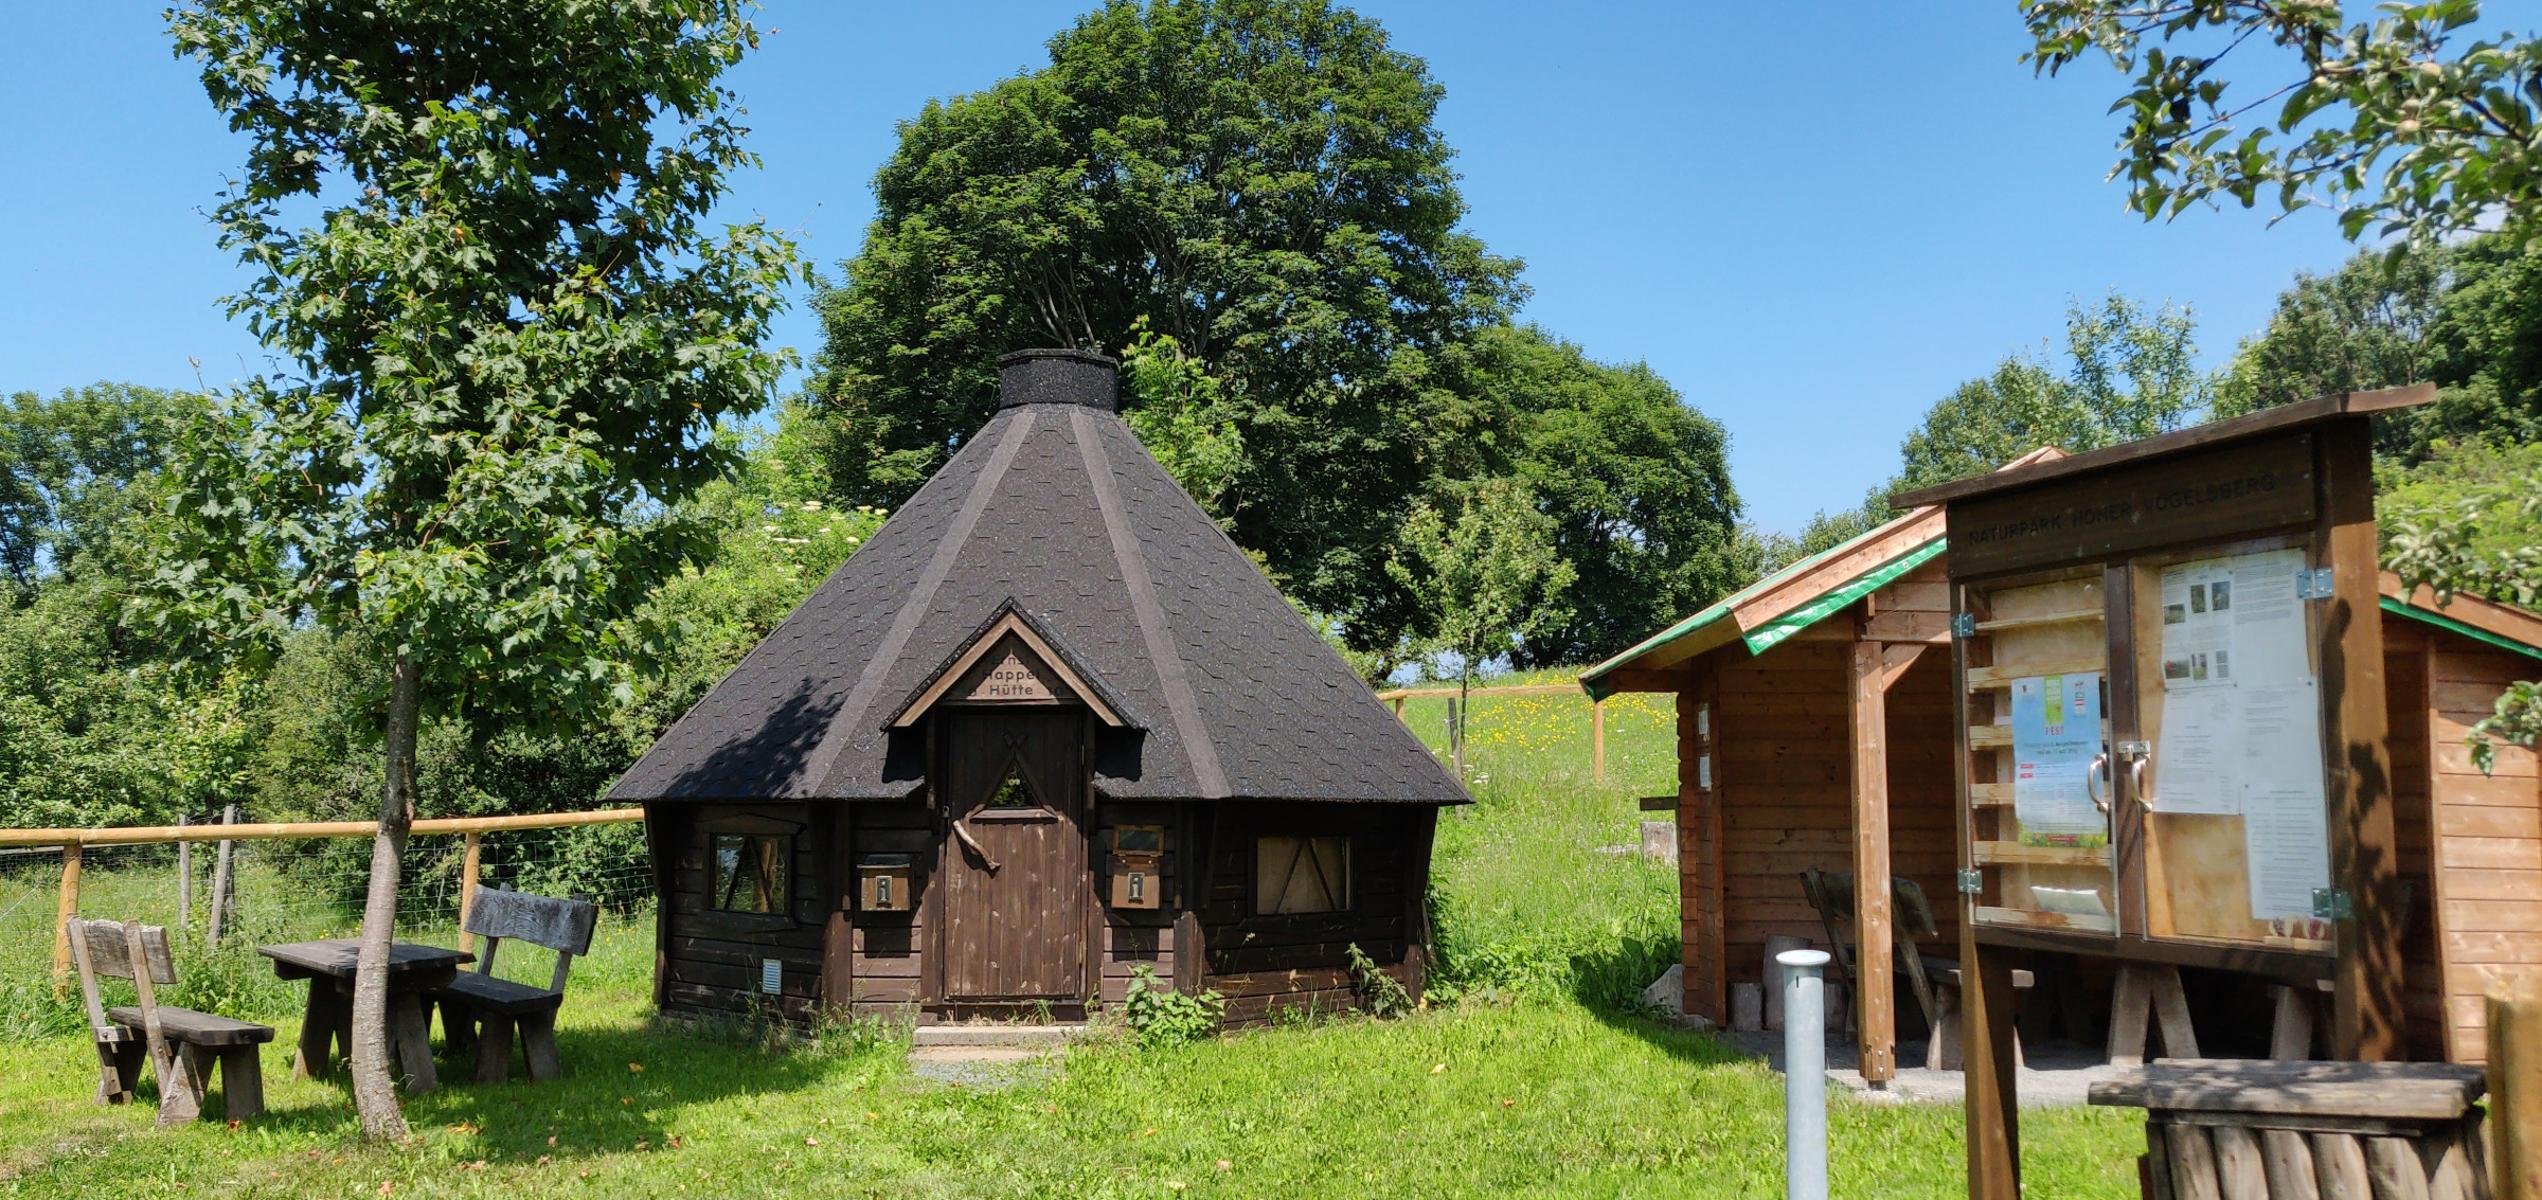 Im Vogelsberggarten auf dem Schlossberg Ulrichstein wurde im Jahr 2001 damit begonnen, jahrhundertealtes Kulturgut rund um die Burgruine wieder nach alten bäuerlichen Wirtschaftsverfahren zu pflegen und zu bewirtschaften. Das bedeutet extensive...